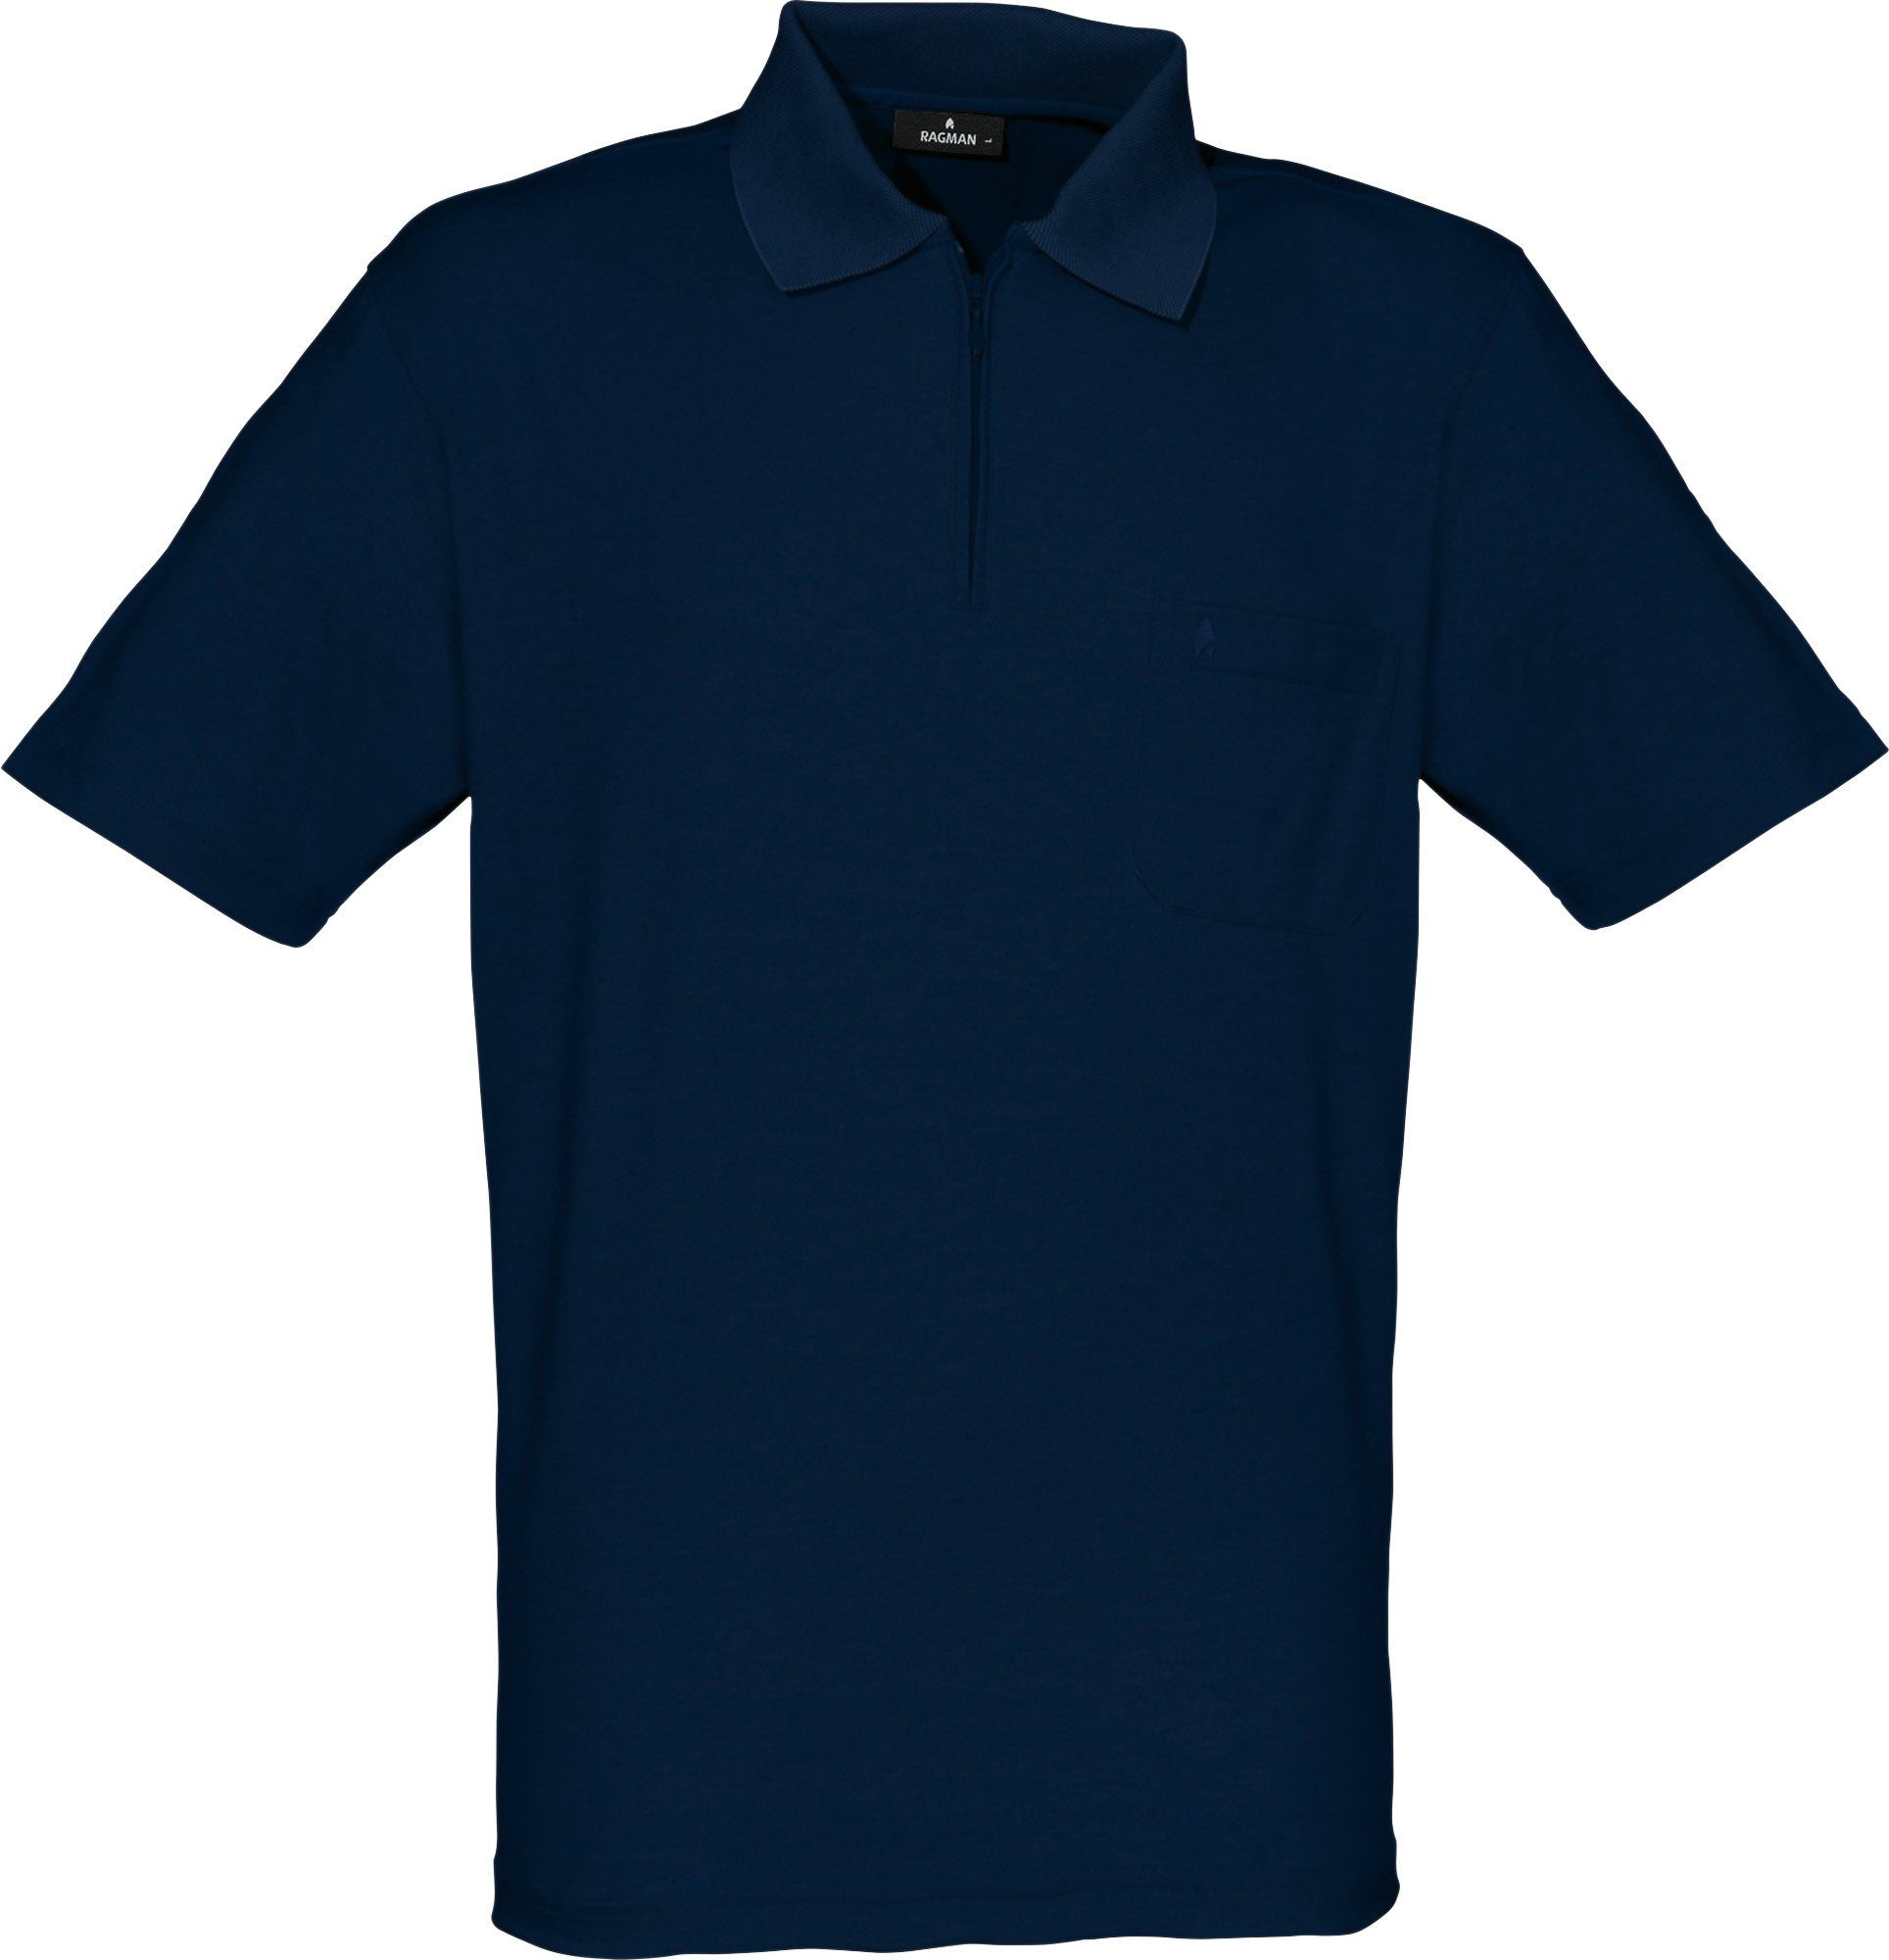 Herren-Poloshirt RAGMAN Uni marine Sweatshirt